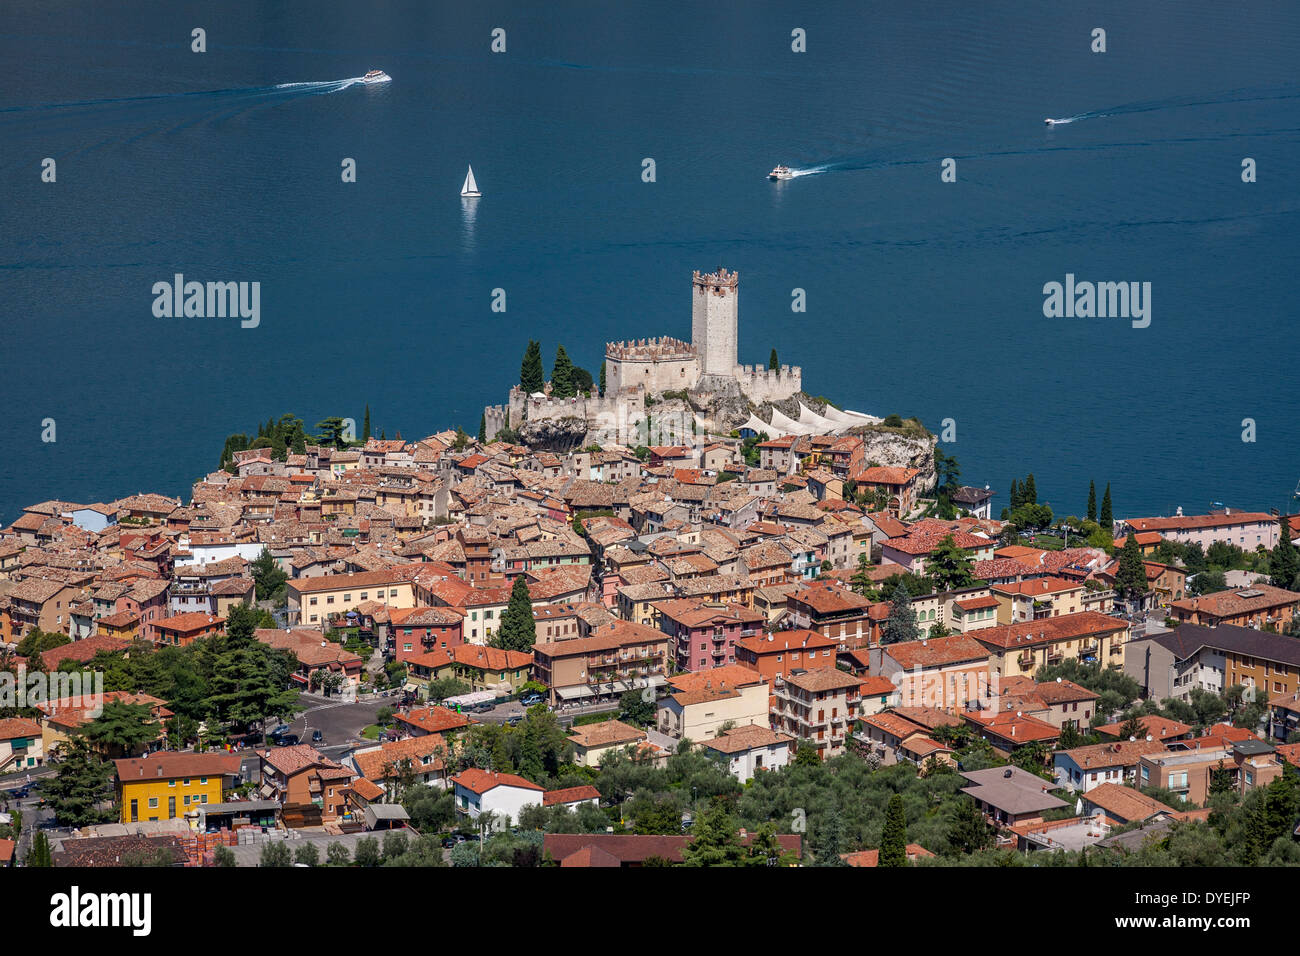 Ein Blick auf die Stadt Malcesine, Gardasee, Veneto, Italien Stockfoto